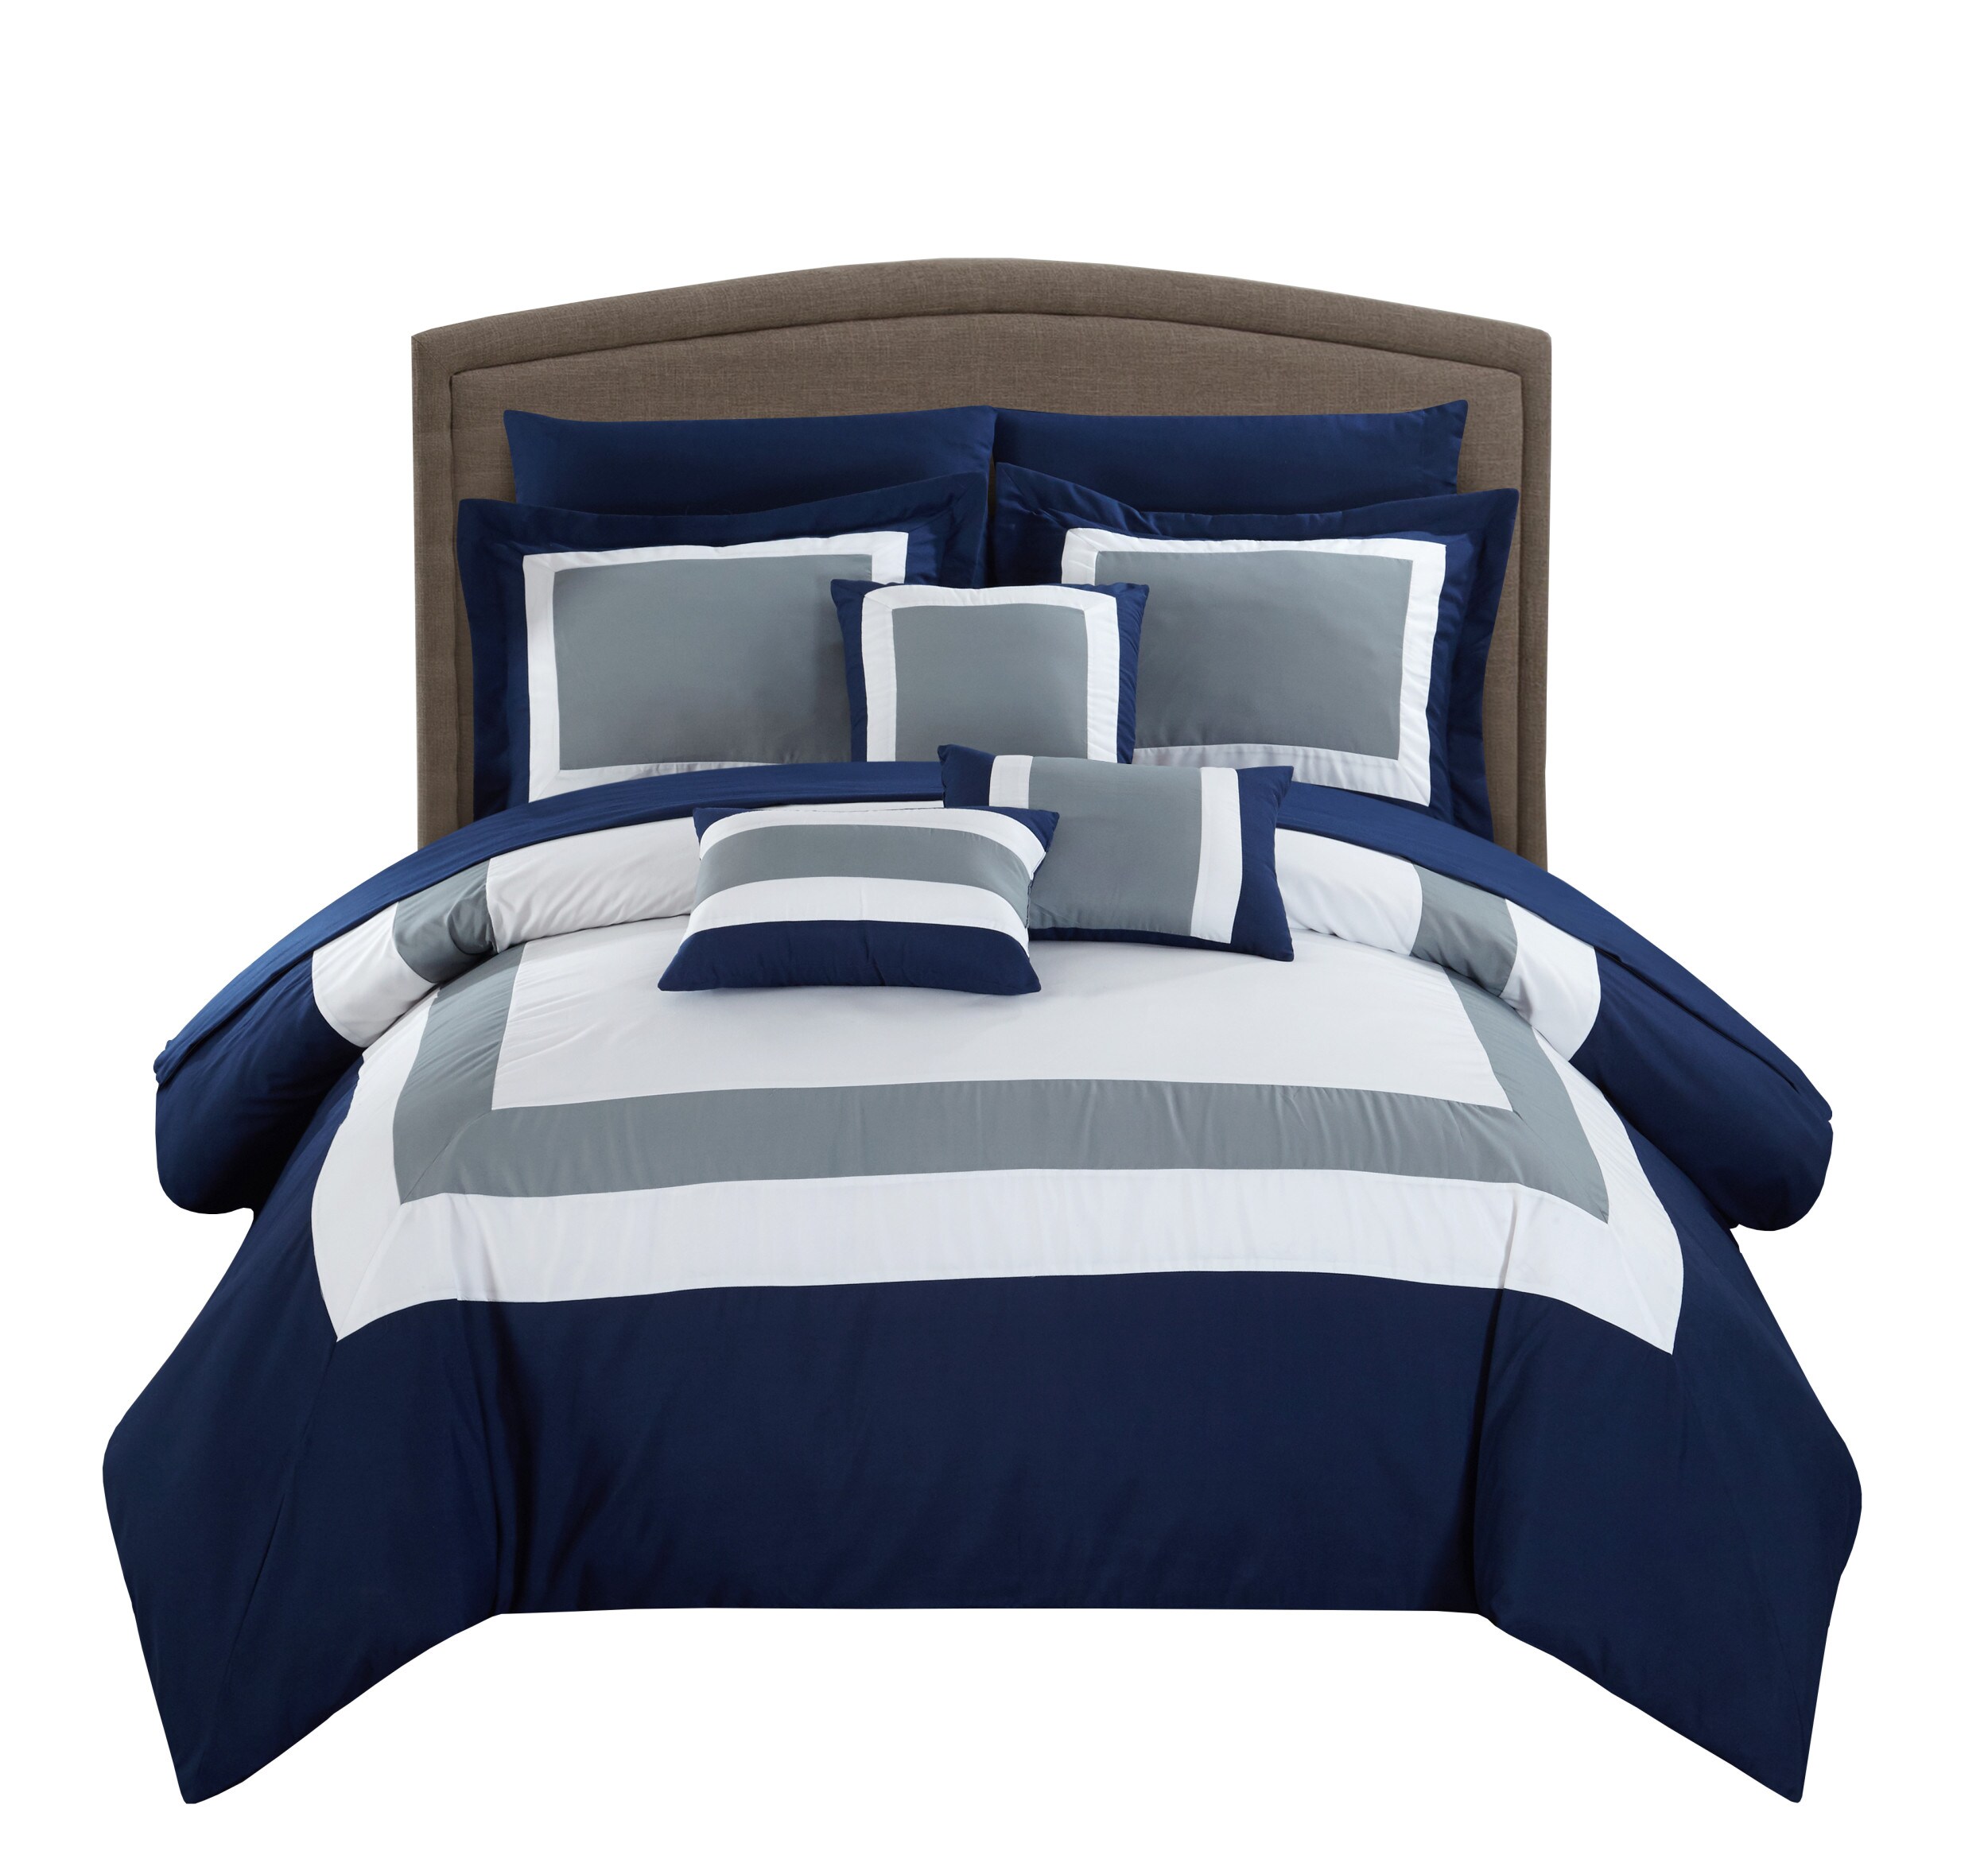 Chic Home Design Duke 10-Piece Navy Queen Comforter Set in the